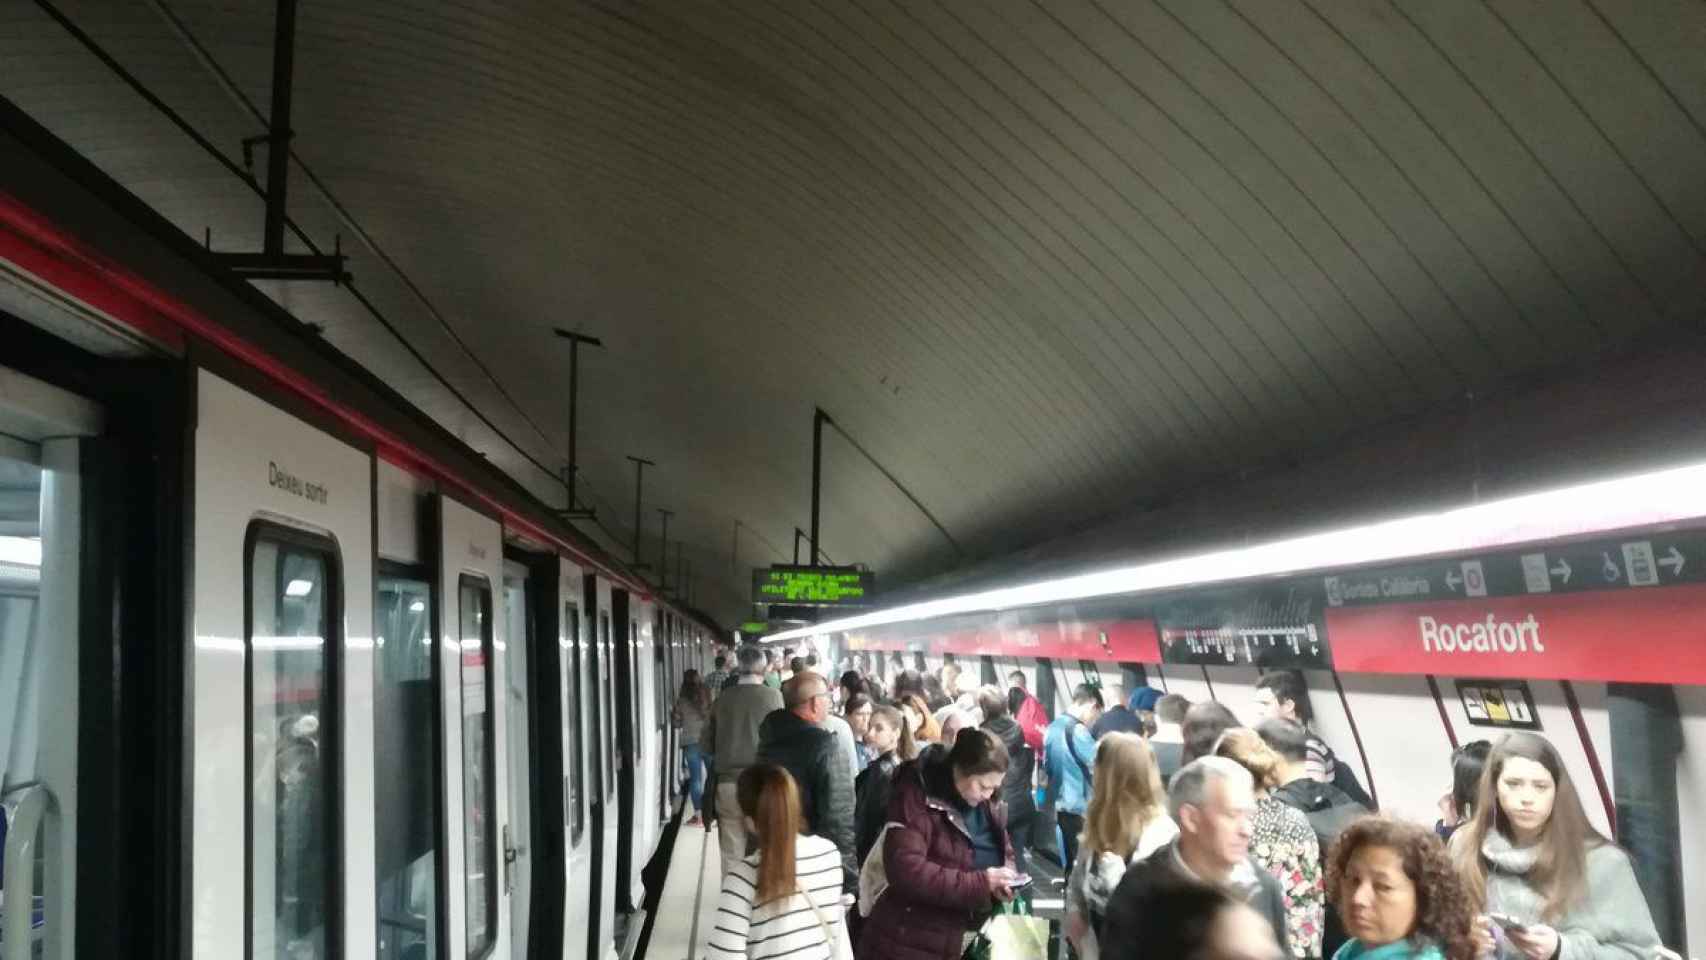 La estación de metro de Rocafort con el convoy de metro parado / TWITTER GIL SANZ